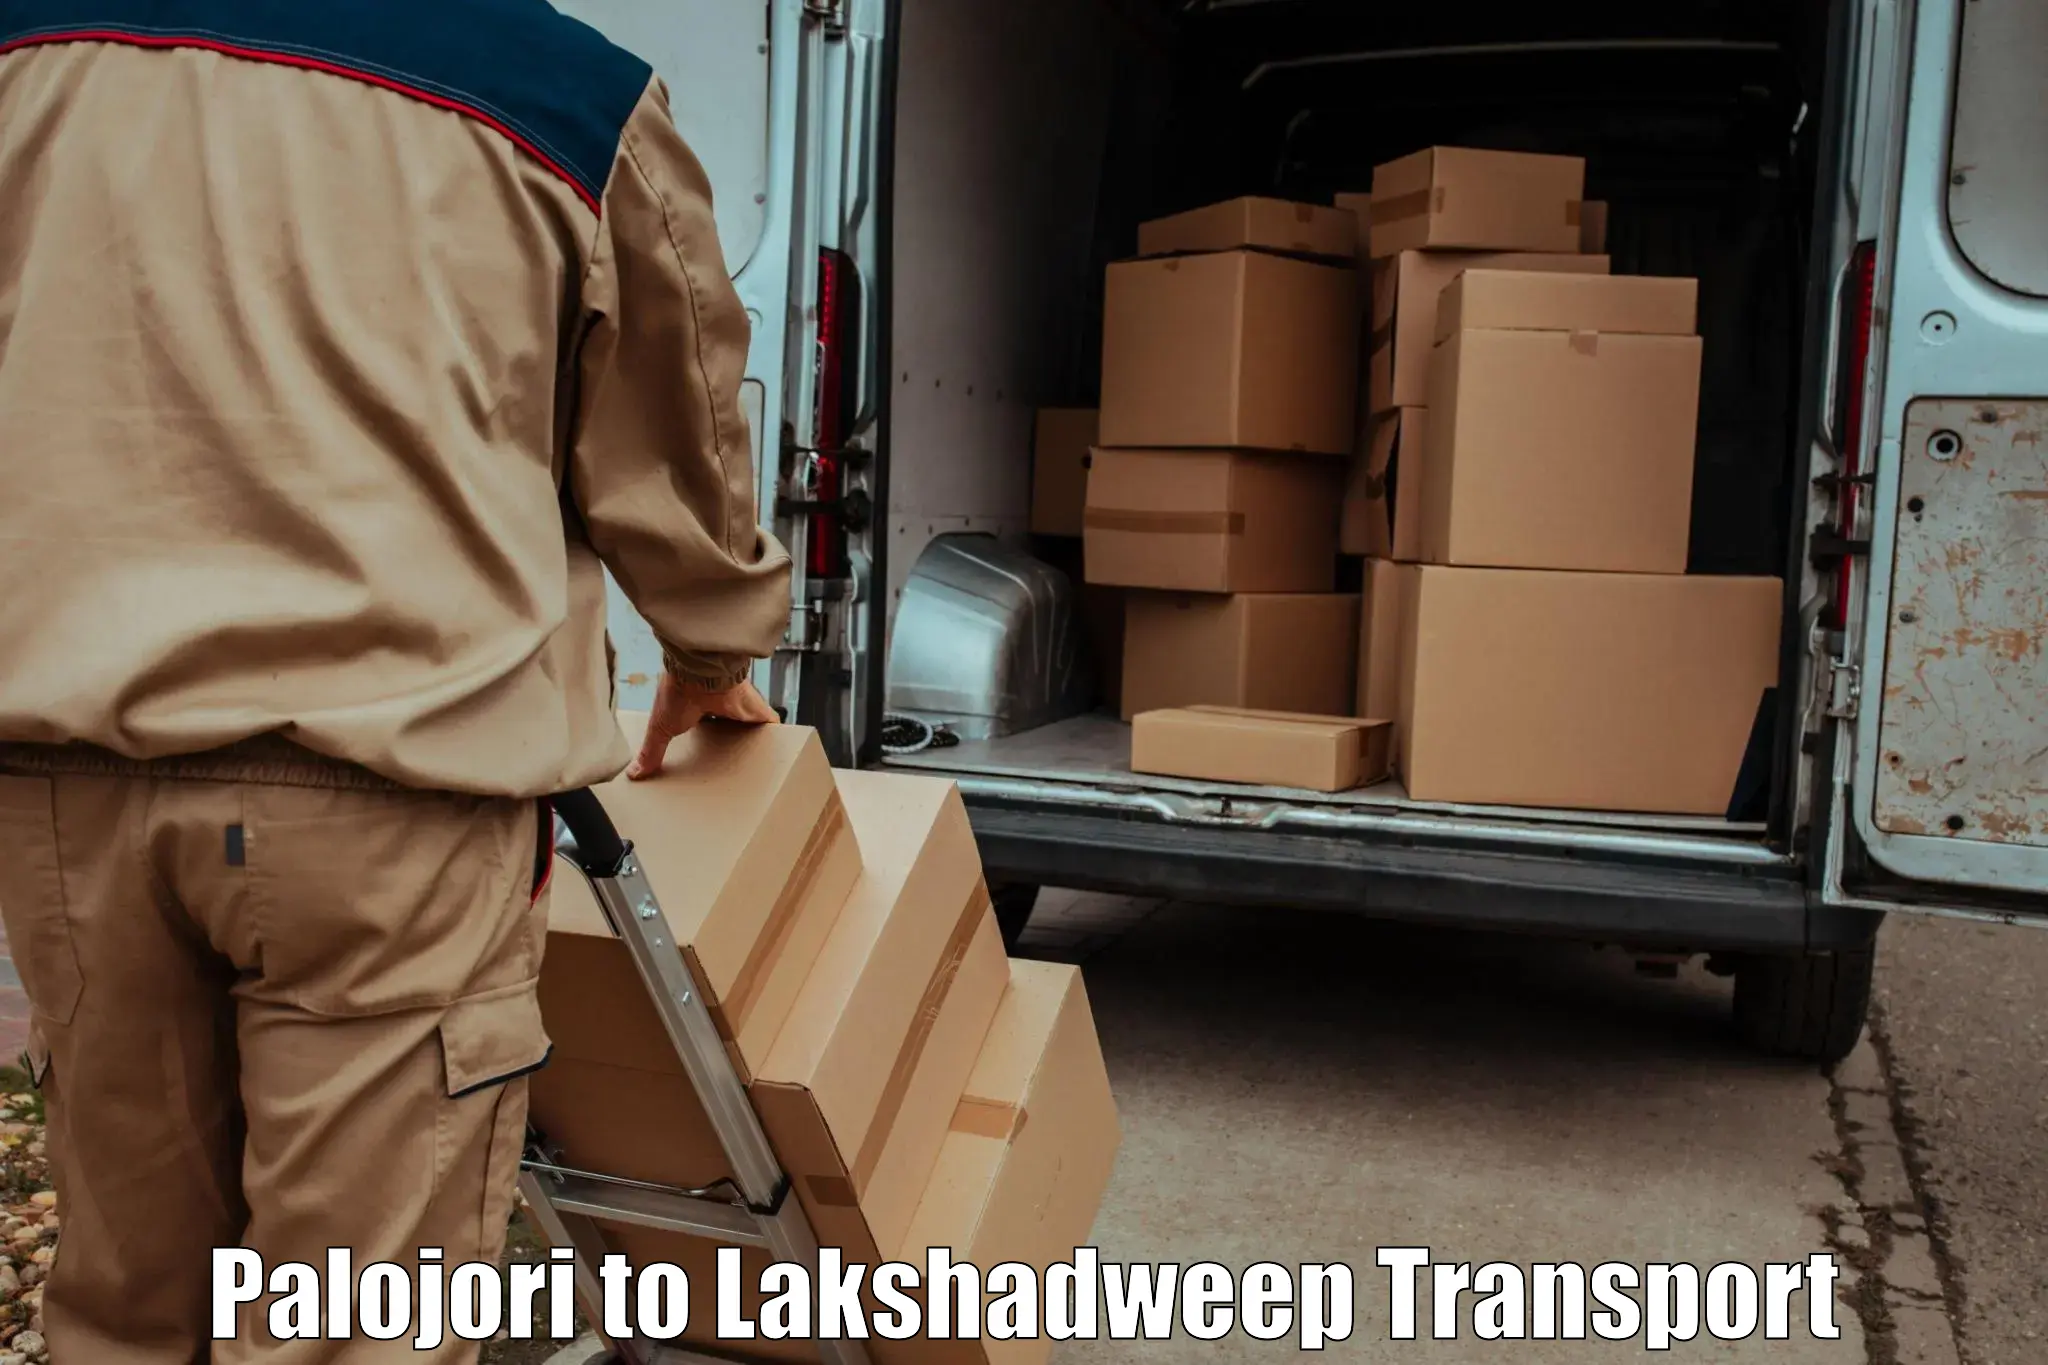 Pick up transport service Palojori to Lakshadweep